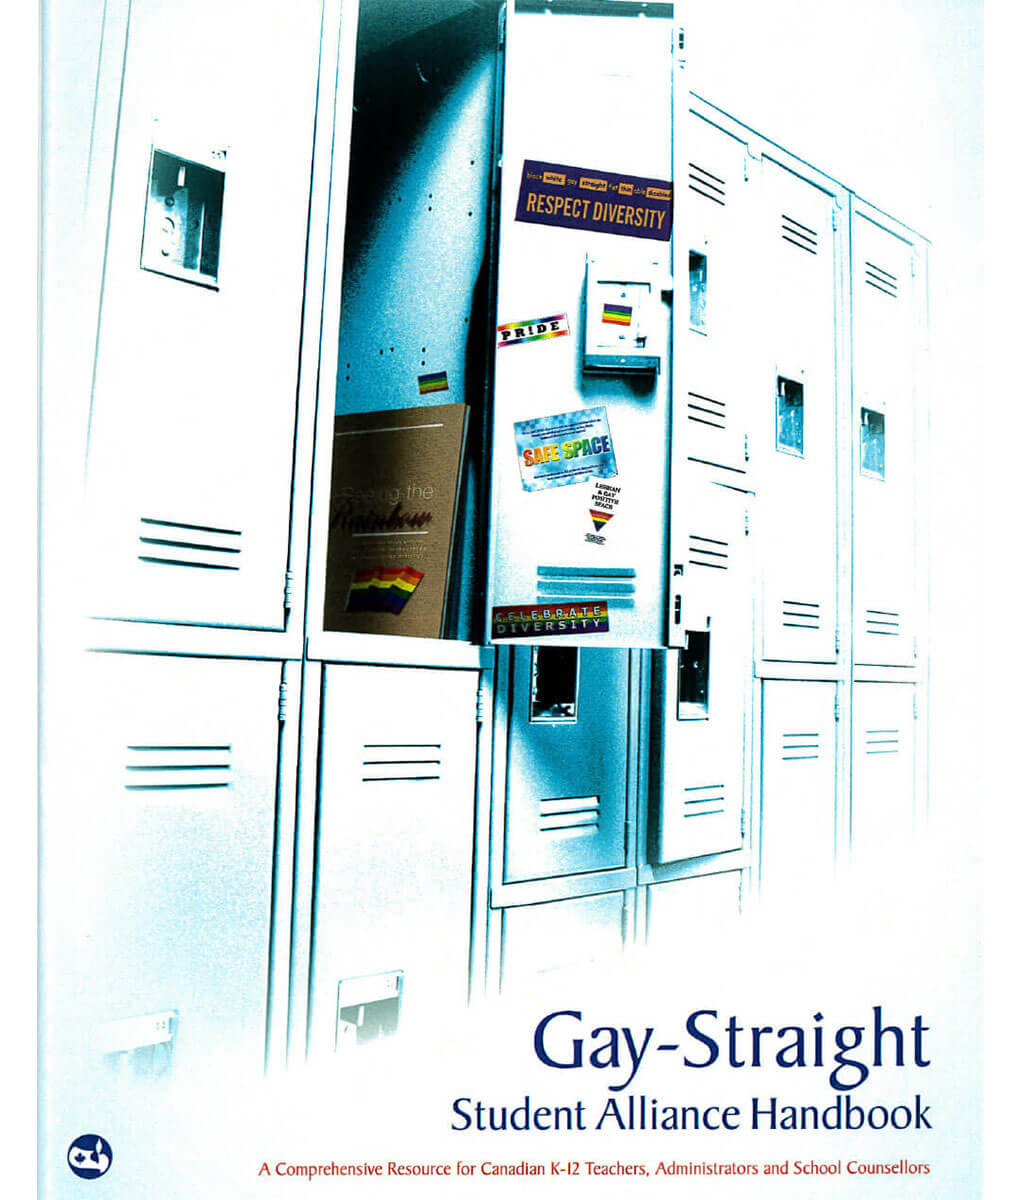 Guide des alliances d’élèves gais et hétérosexuels